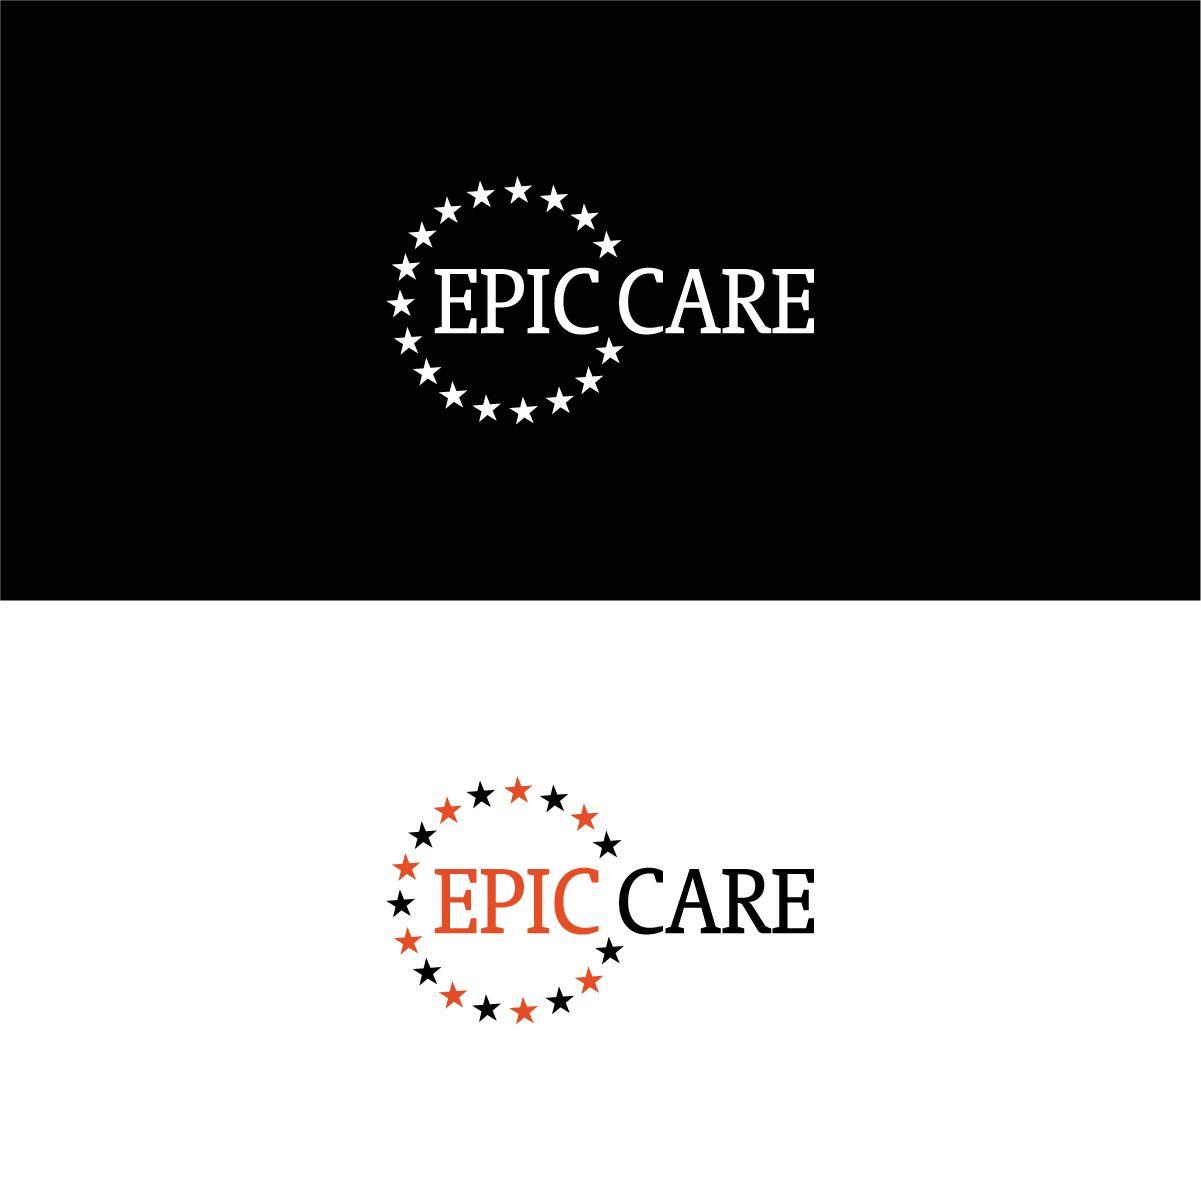 EpicCare Logo - Professional, Elegant, Medicare Logo Design for EPIC by BlacknWhite ...